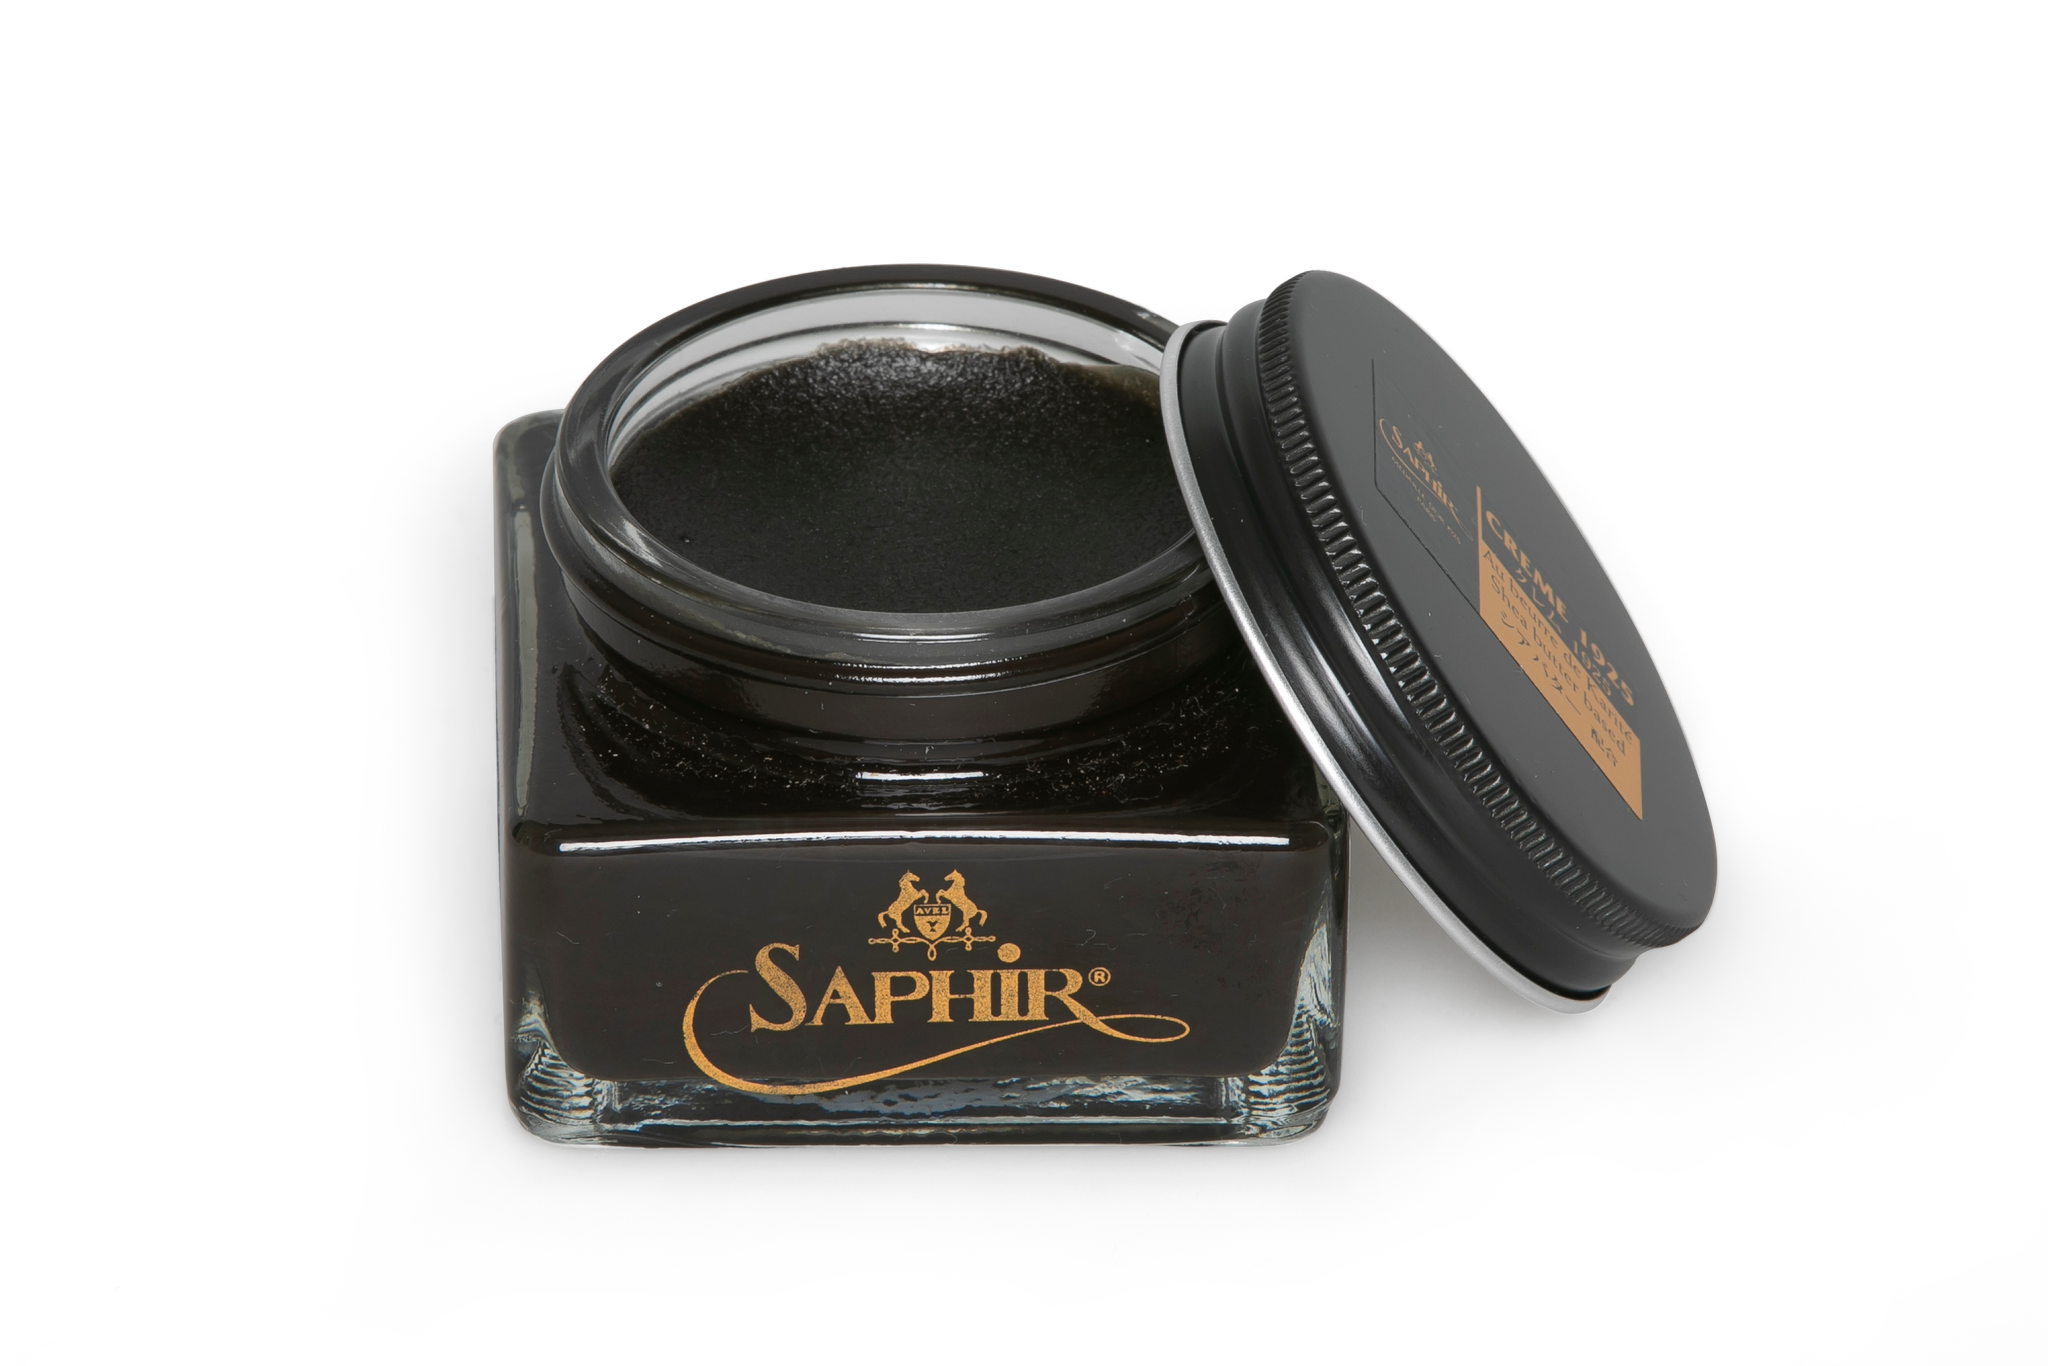 Saphir Pommadier cream in Havana Tobacco colour for premium shoe care